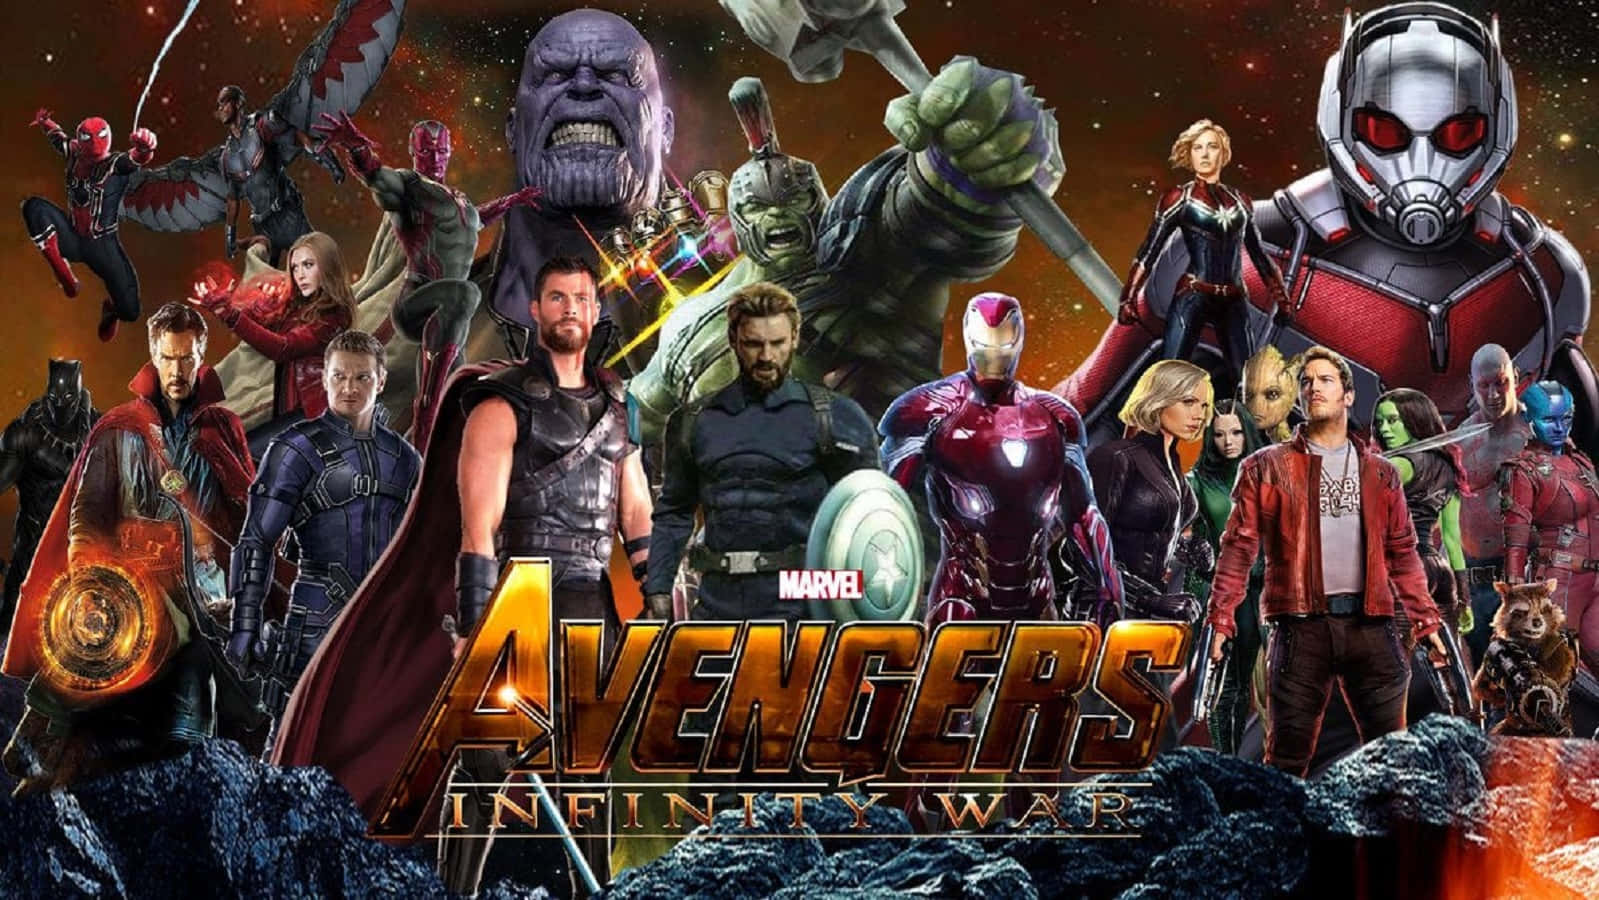 Marvel's Avengers Assemble for Infinity War